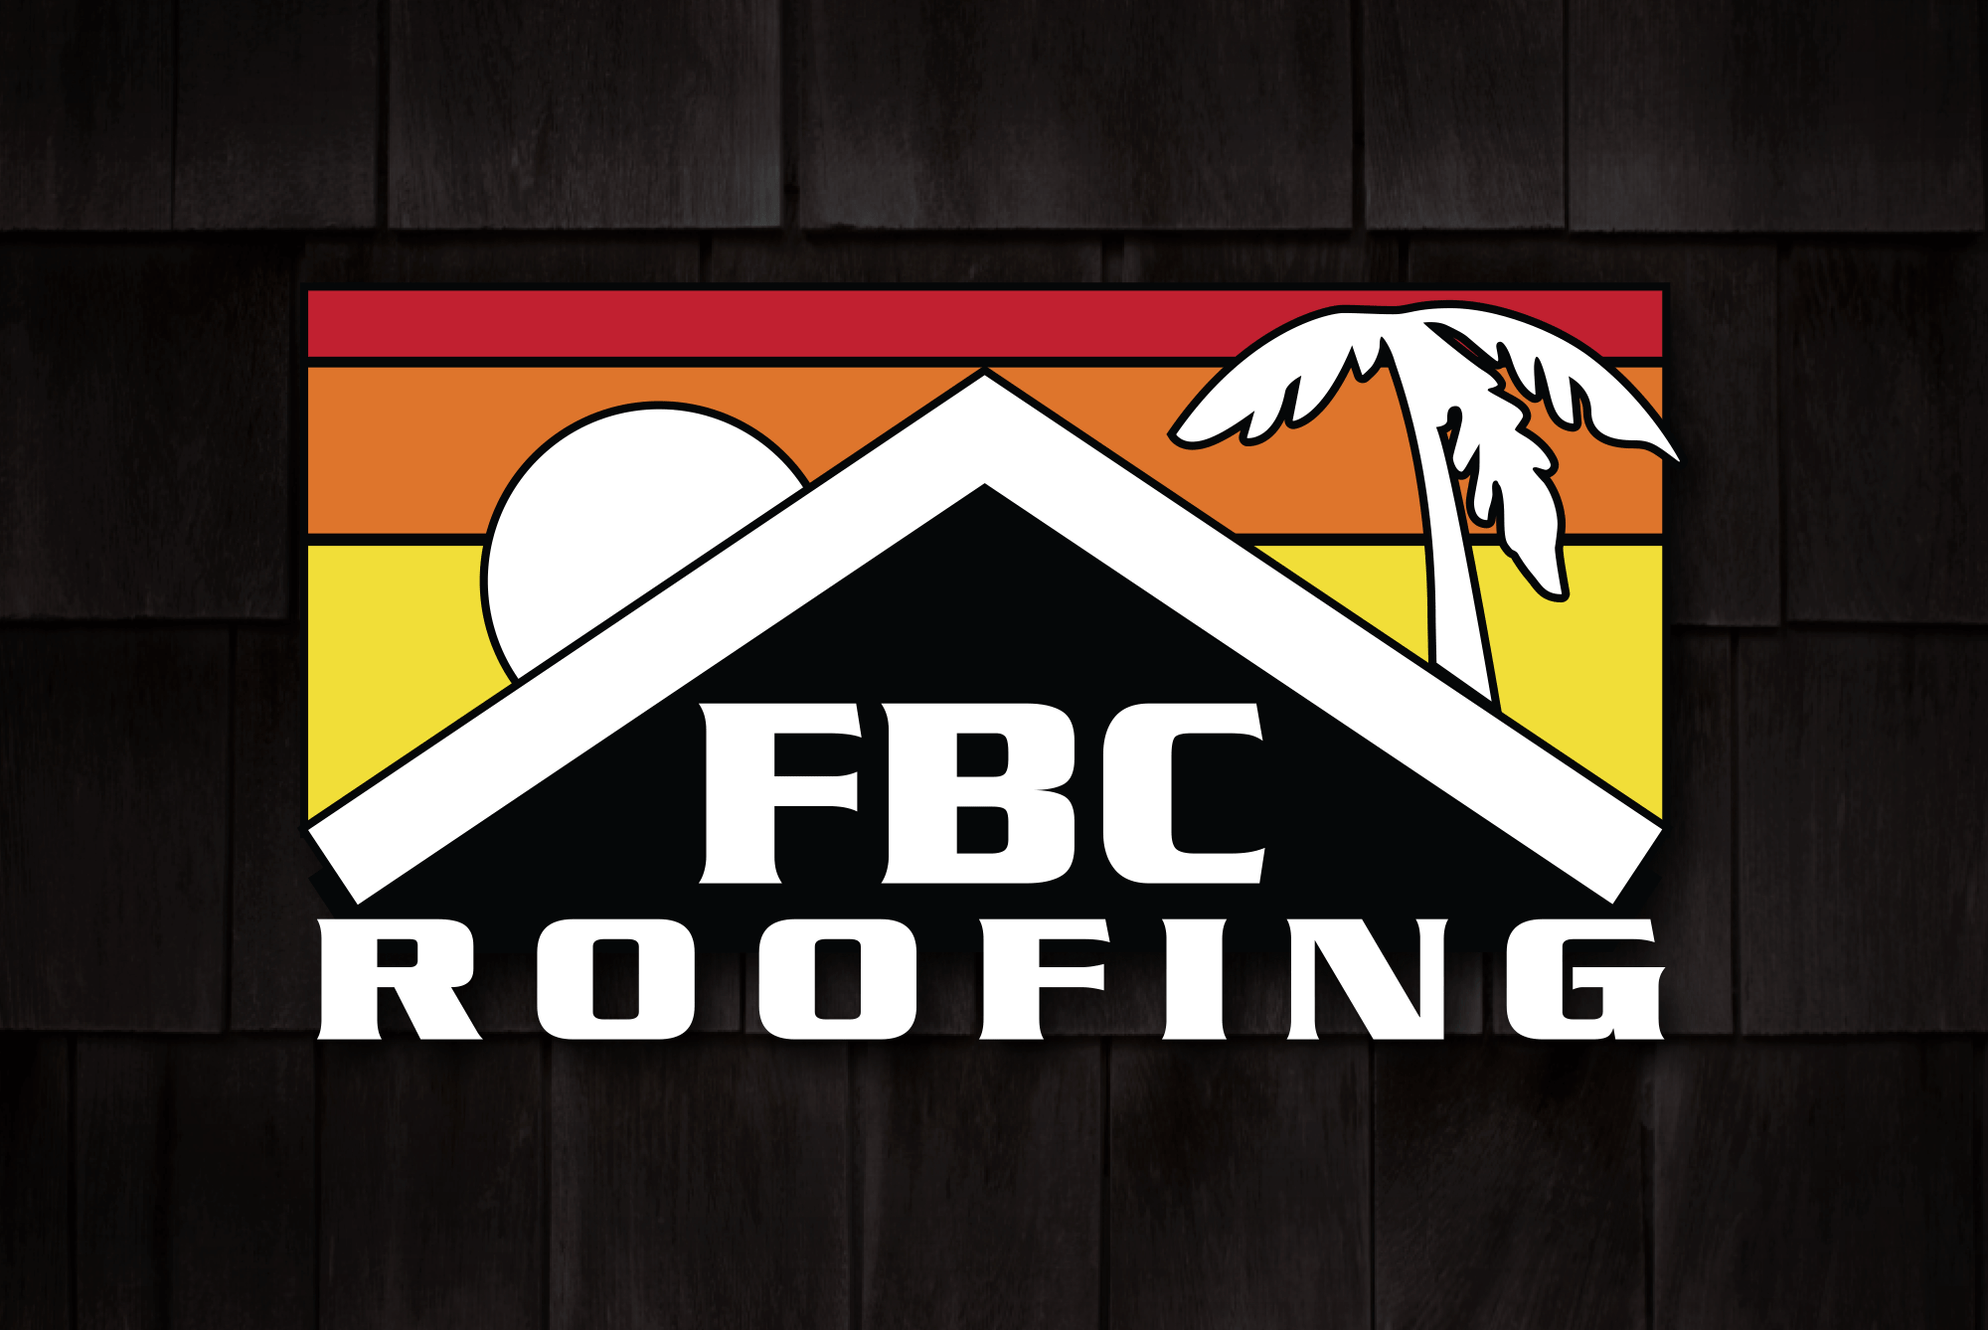 FBC Roofing Hawaii roofing company in Hawaii